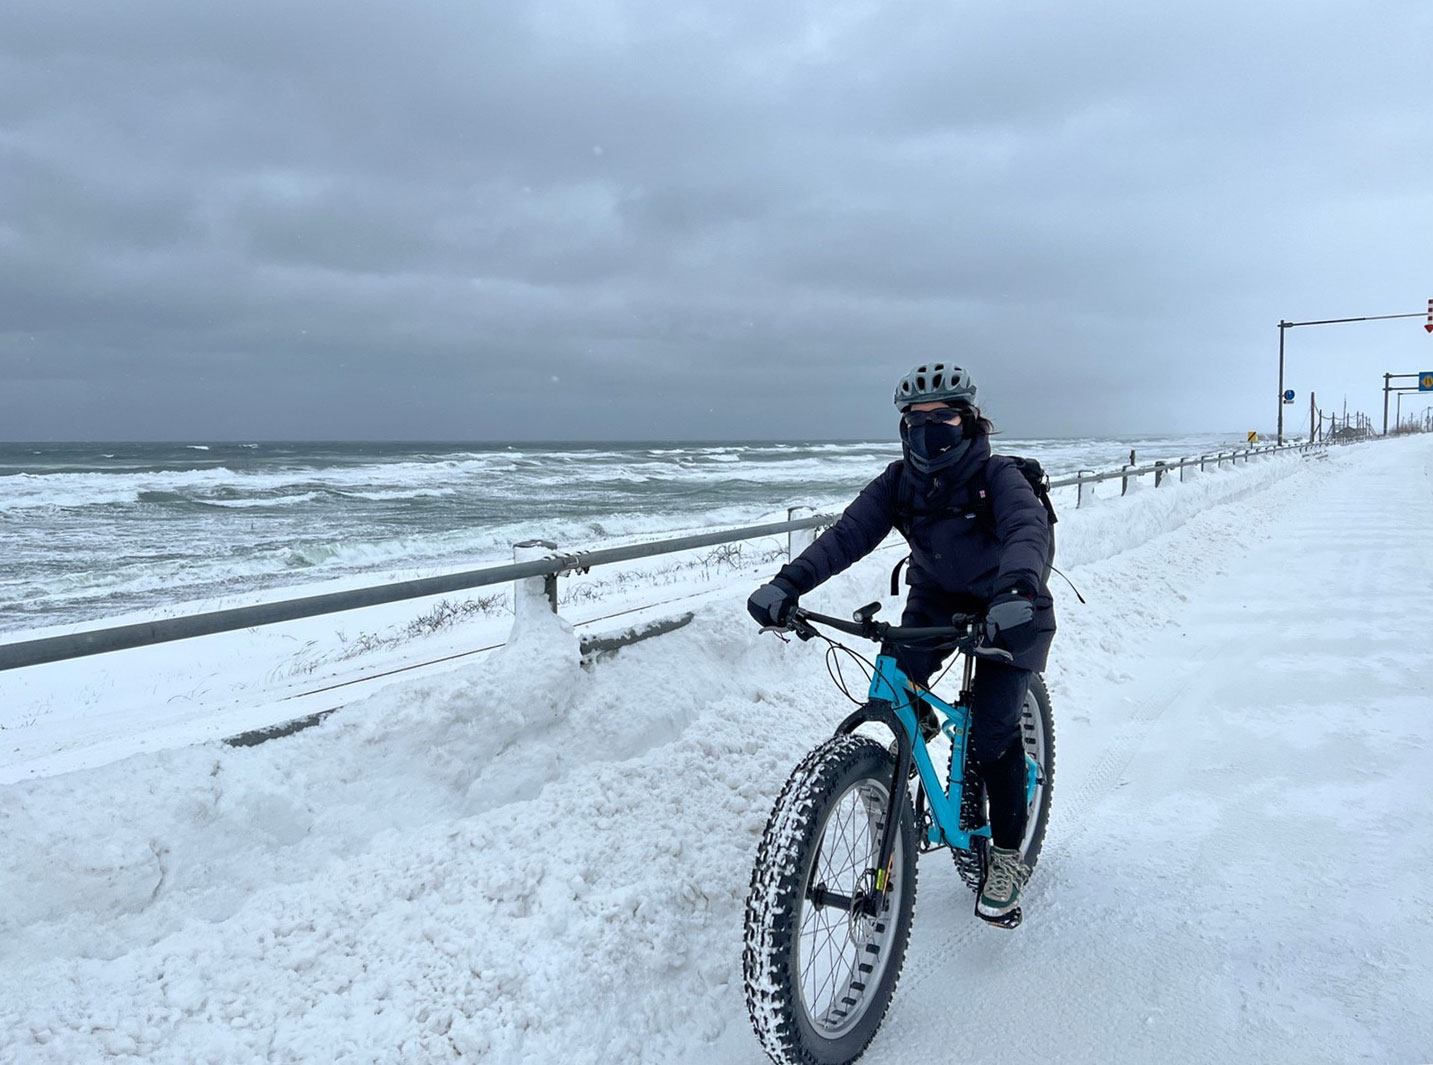 【北海道】北の大地・網走で雪上サイクリング。ファットバイクで楽しむ冬ライド